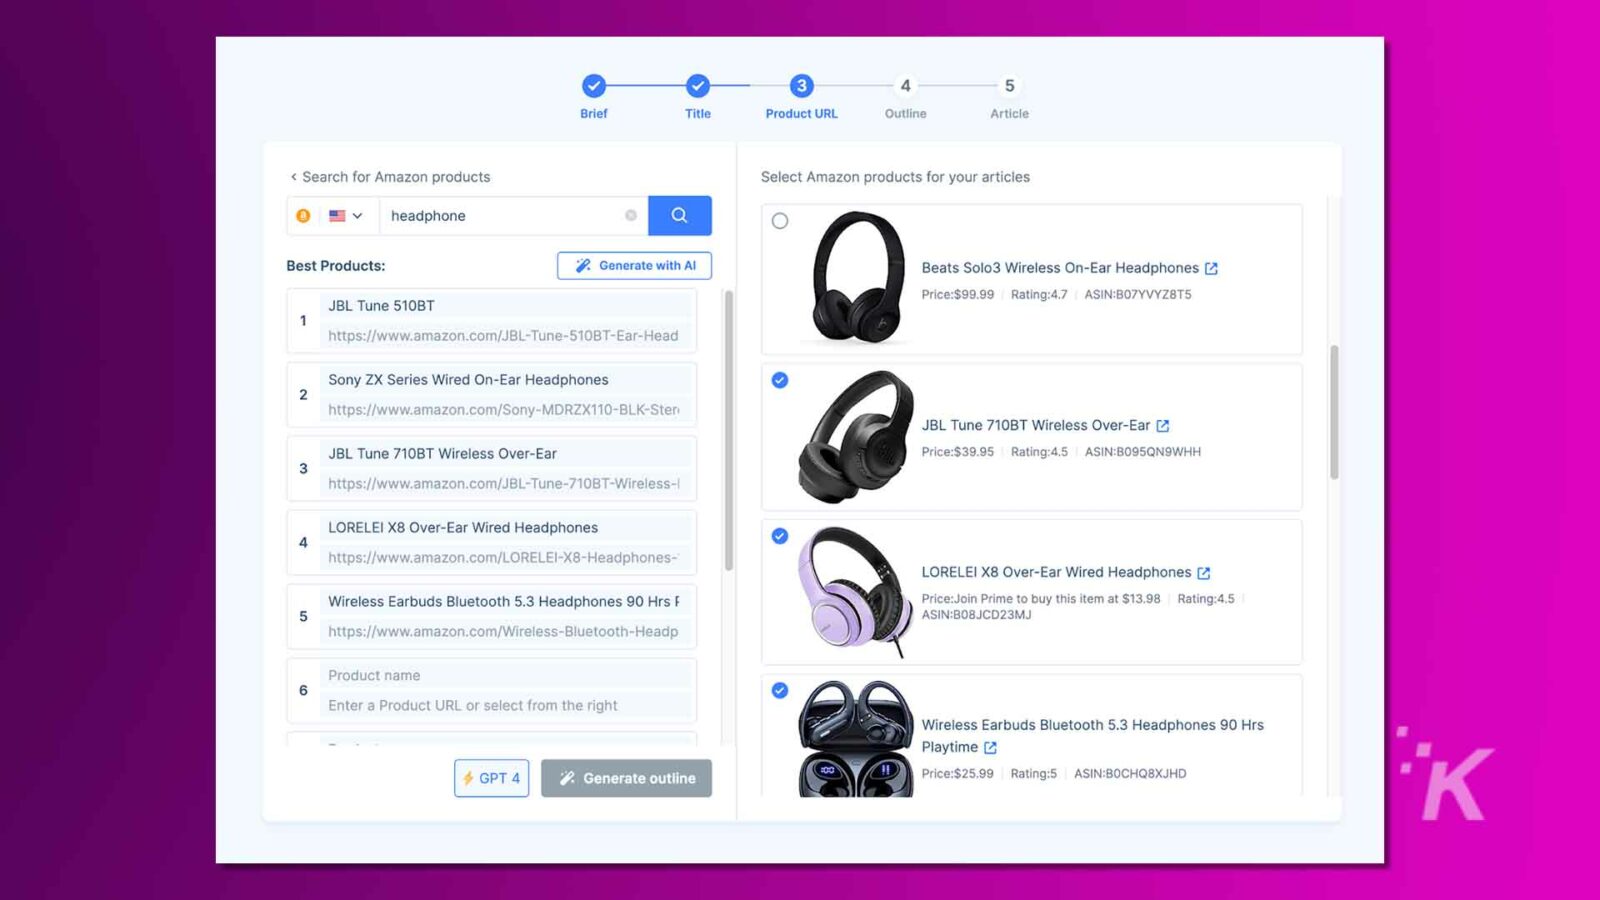 该图像显示了一个带有搜索栏和耳机列表的用户界面，显示了它们的图像、名称、价格和客户评分。